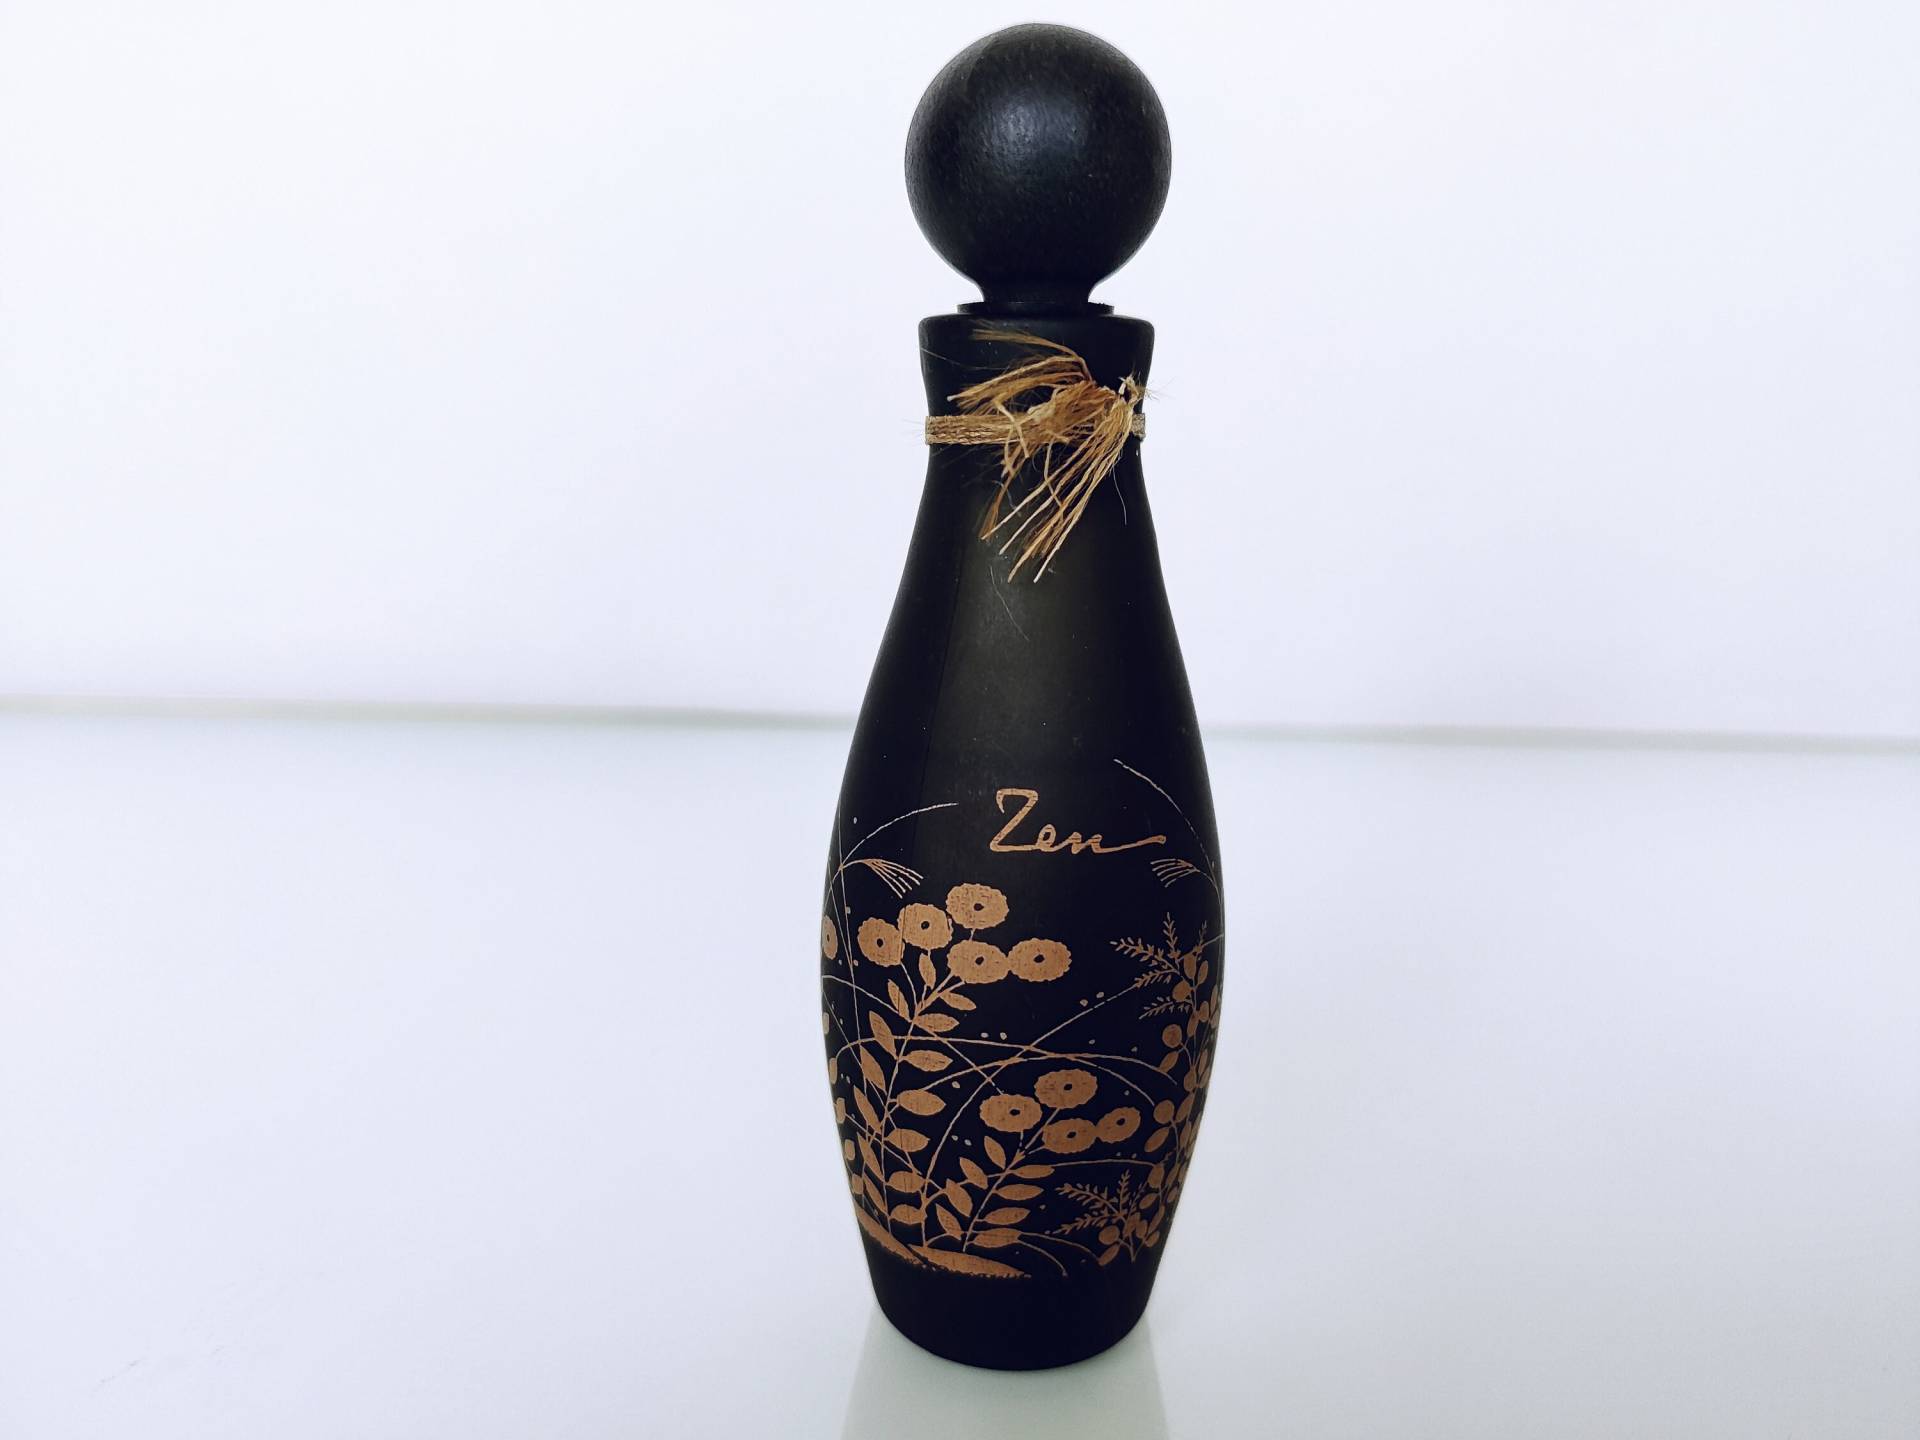 Zen Shiseido | 1964 Parfum/Extrait 30 Cc/1 Us Fl.oz. Splash, Vintage Damenduft, Keine Box, Geschenkidee von MyVintageGadgets